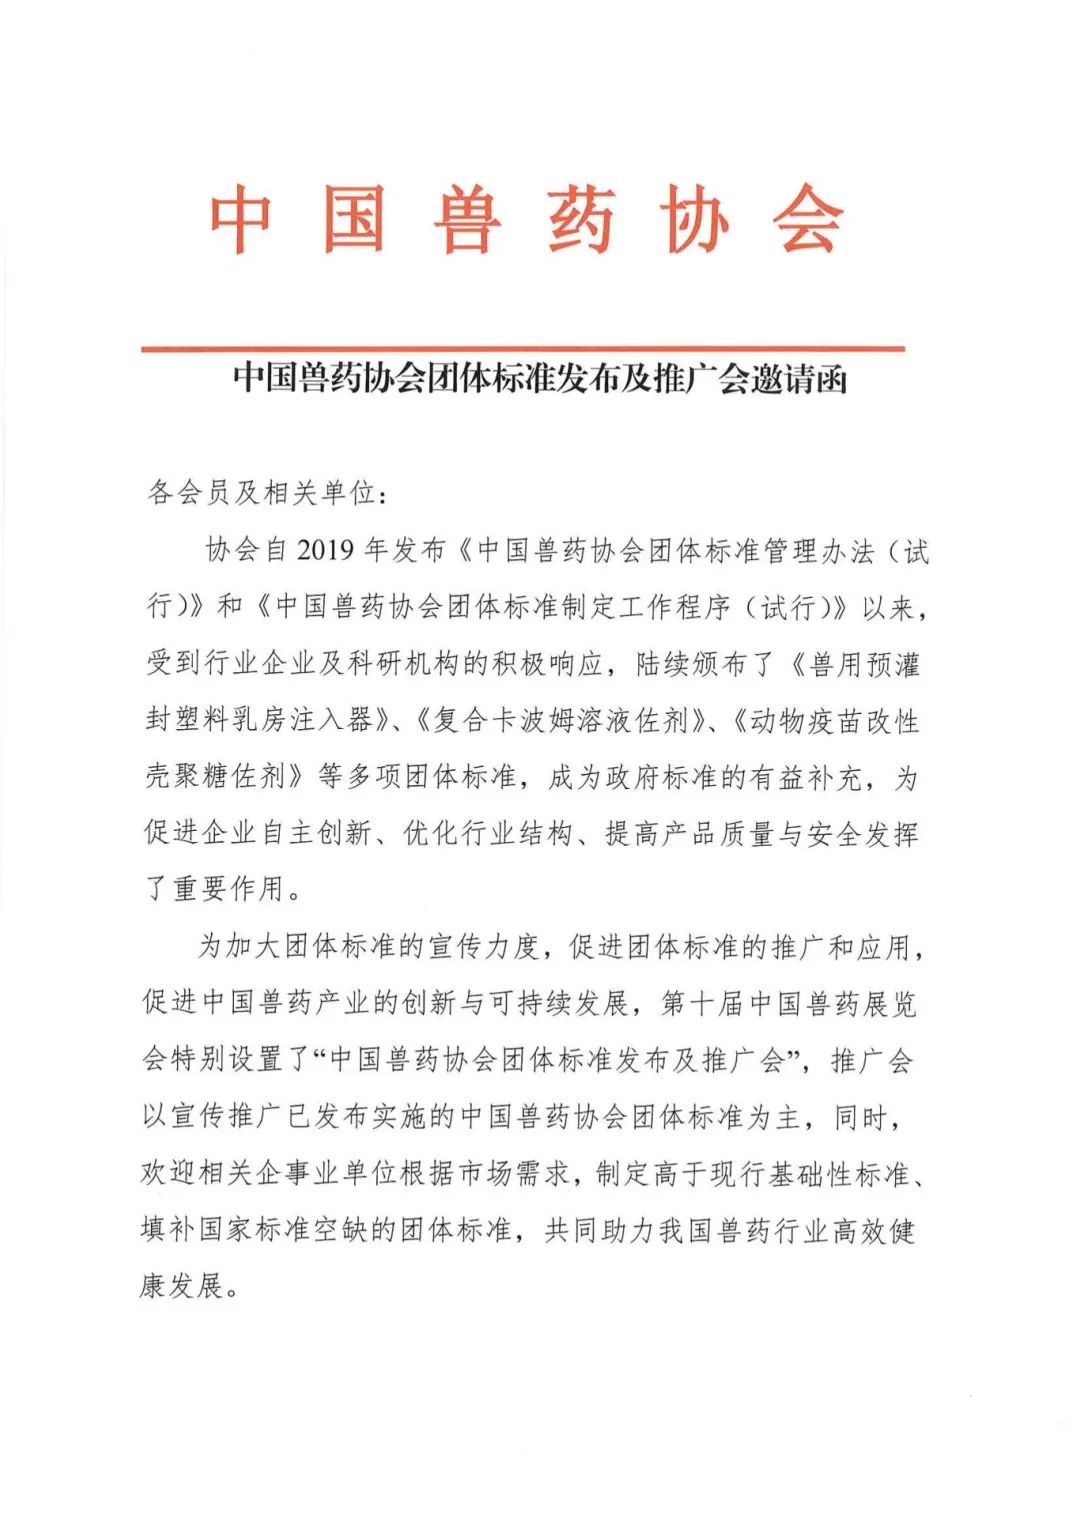 中国兽药协会团体标准发布及推广会邀请函